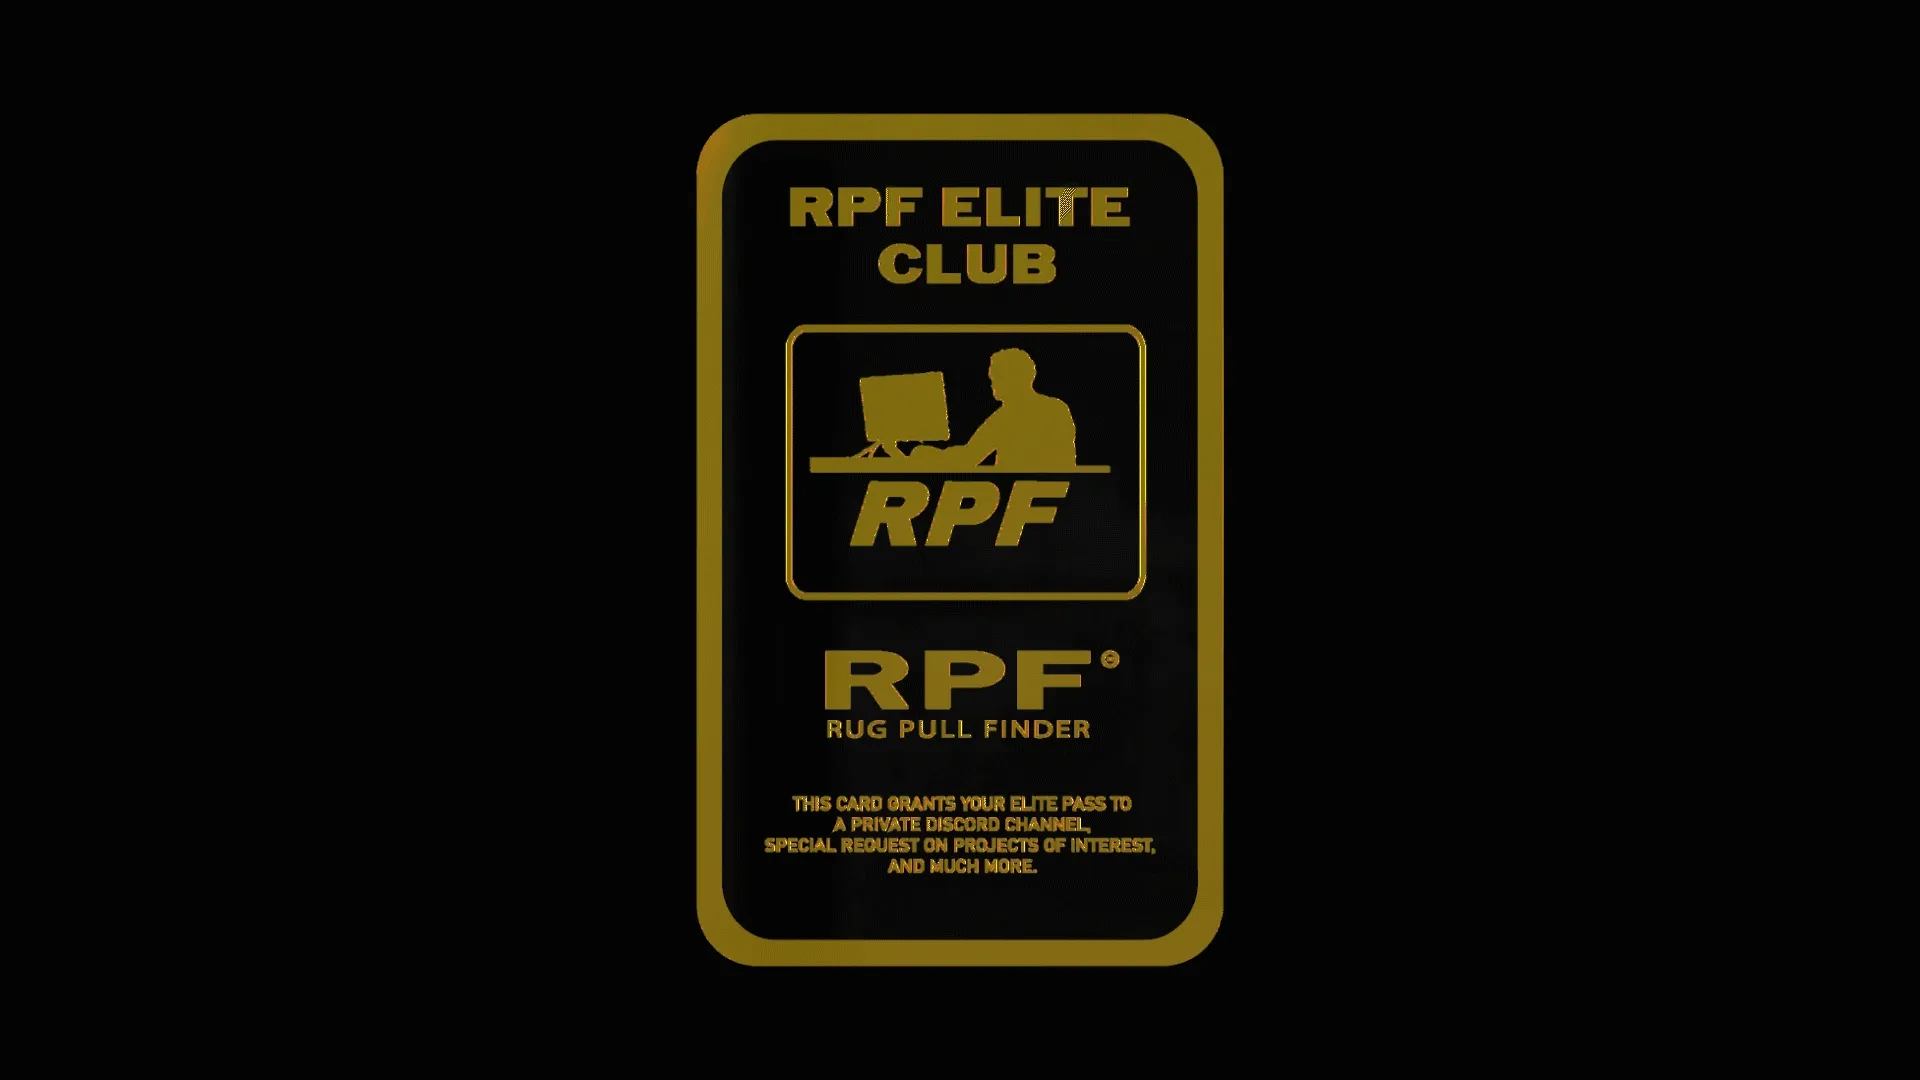 RPF ELITE CLUB